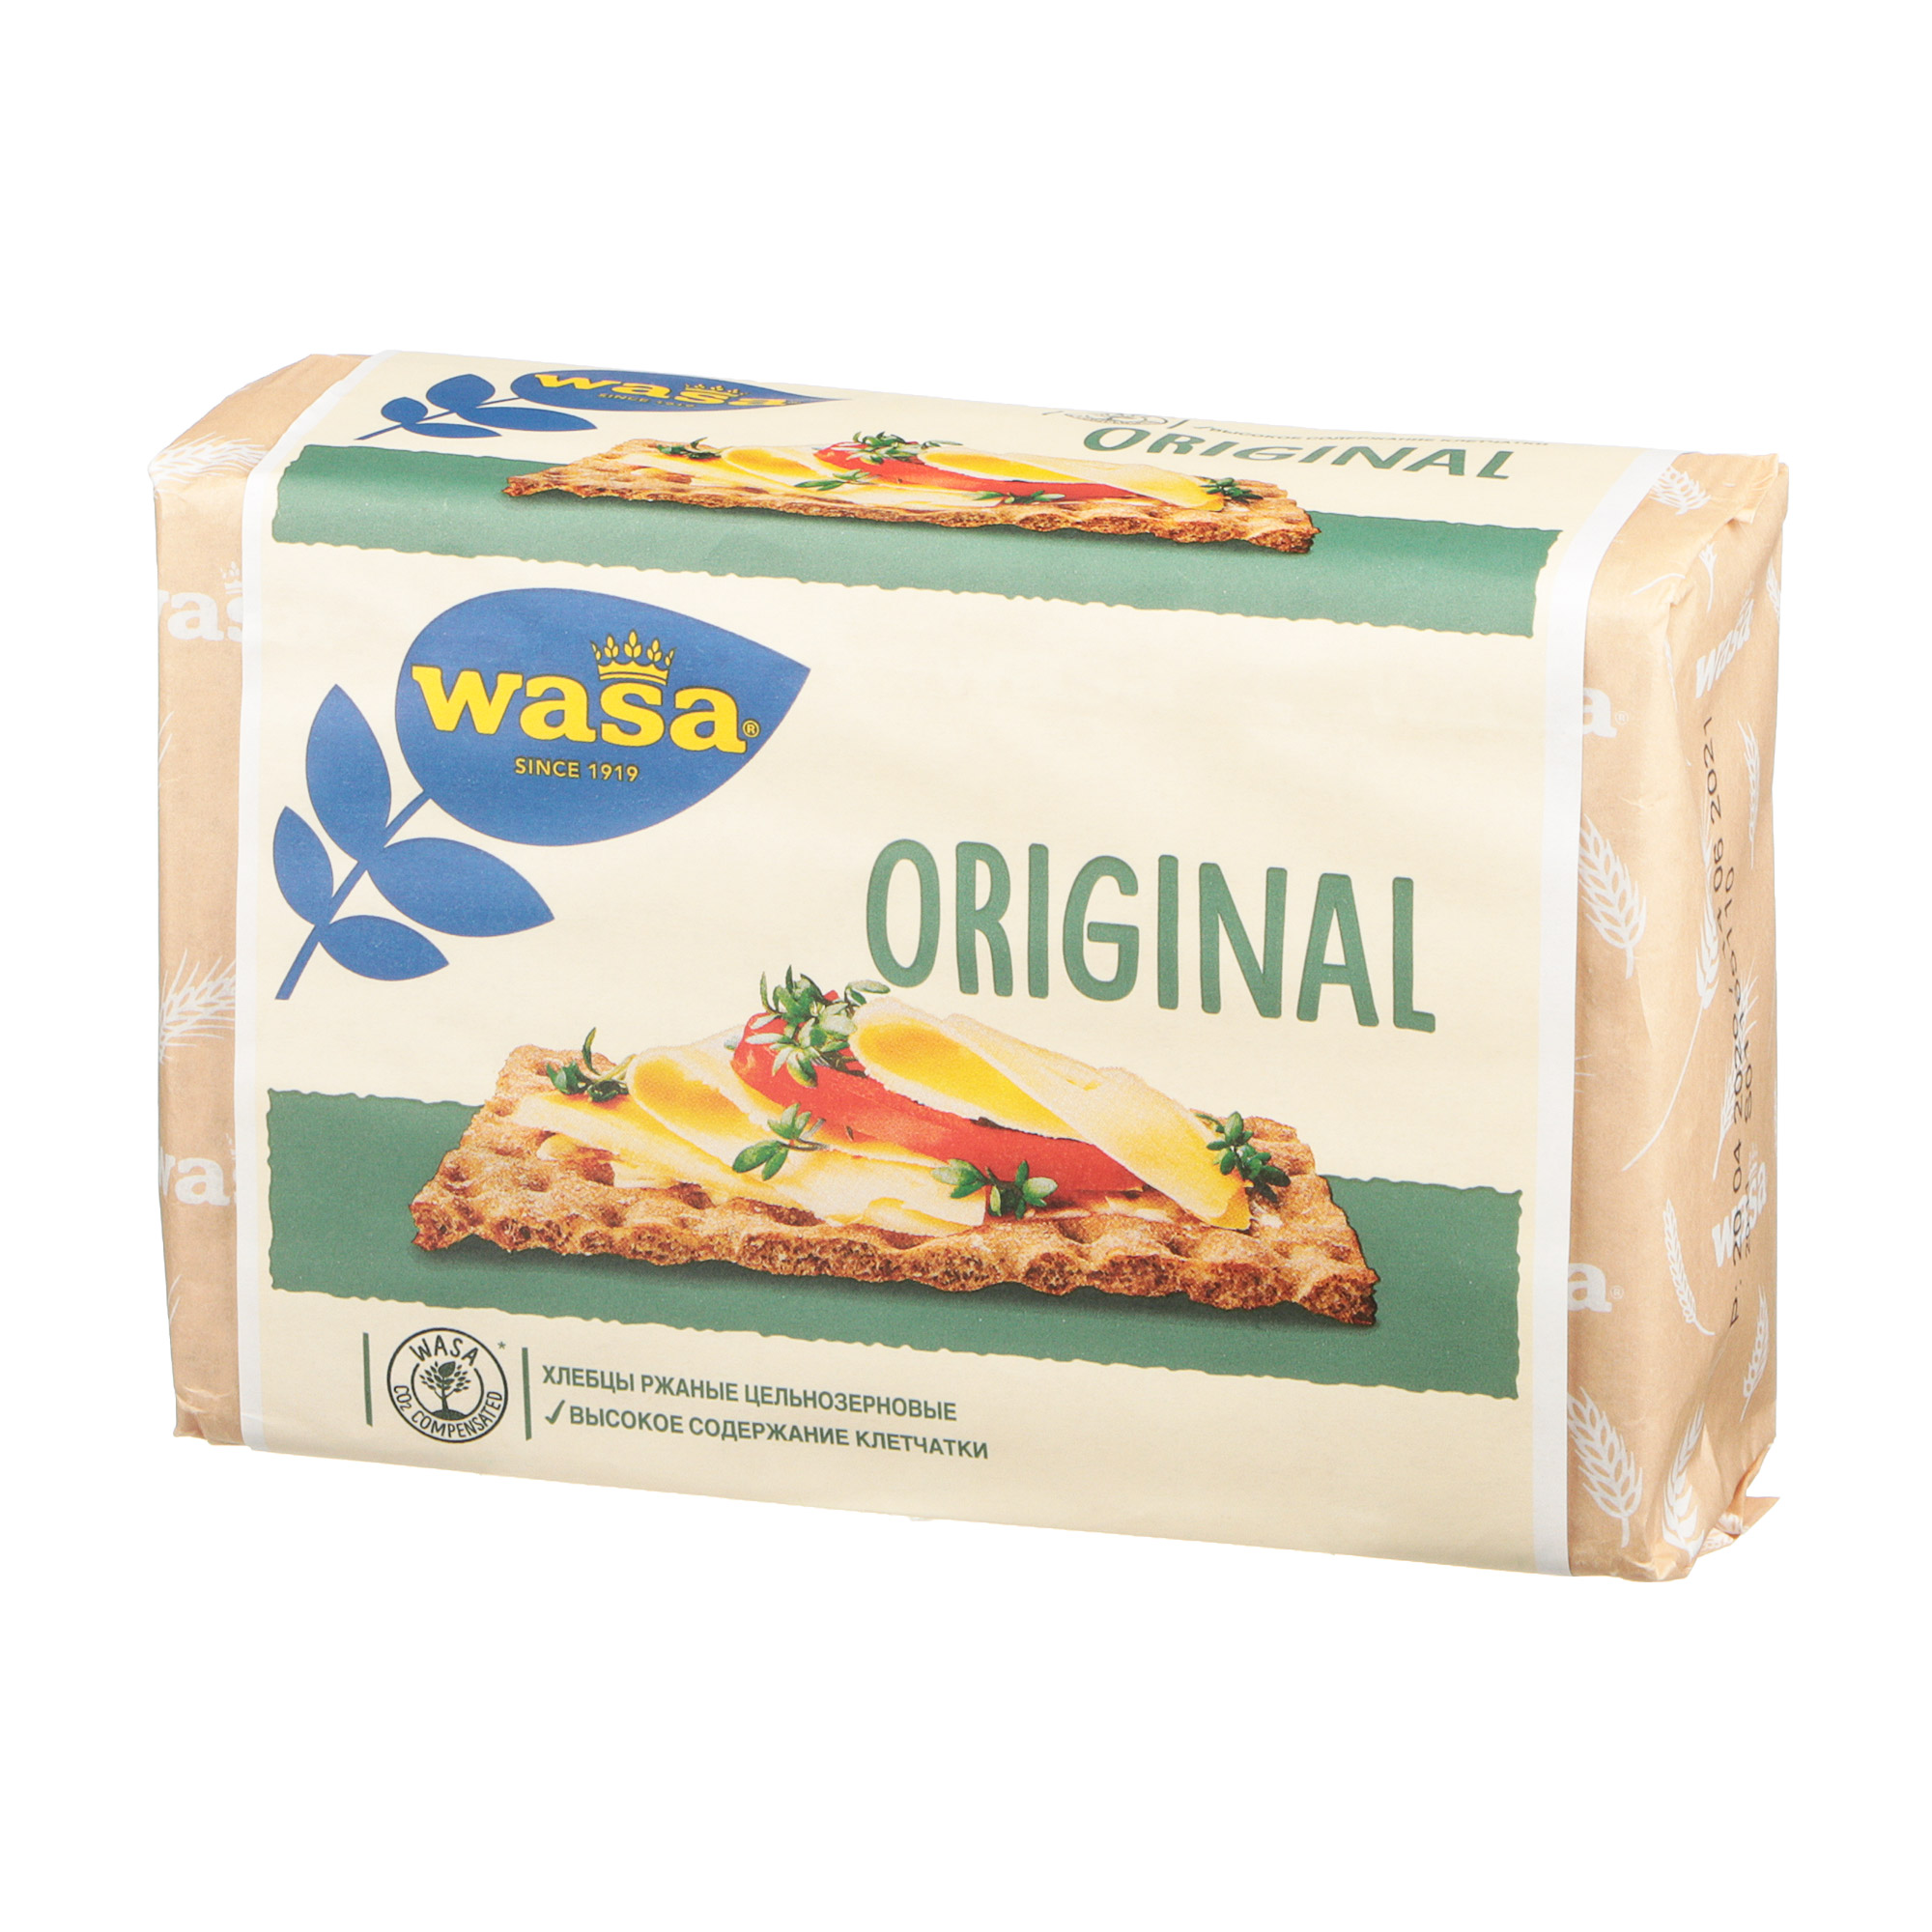 Хлебцы ржаные Wasa Original цельнозерновые 275 г хлебцы пшеничные wasa с белым маком 240 гр